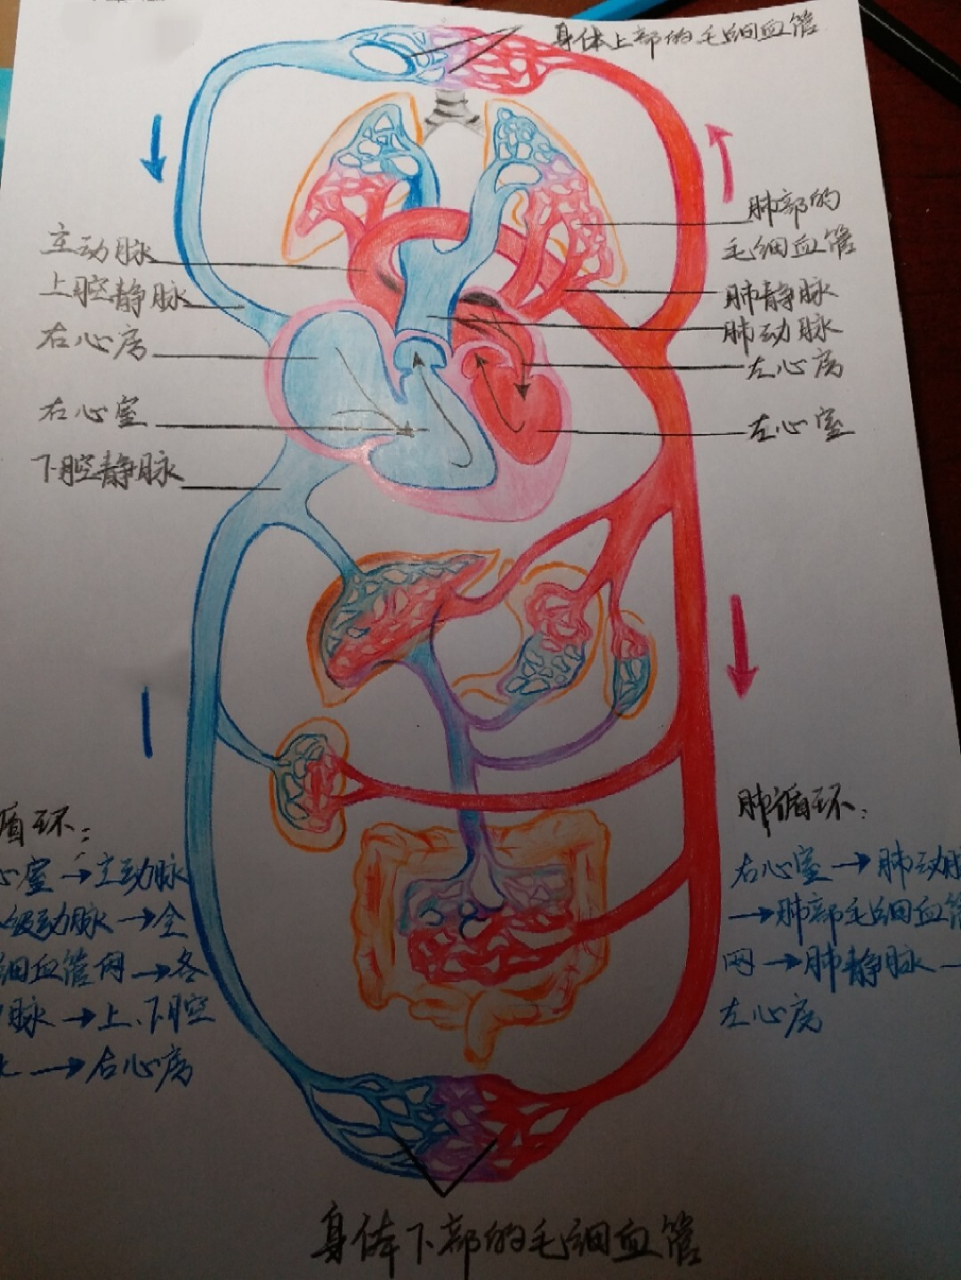 体循环和肺循环路线图图片